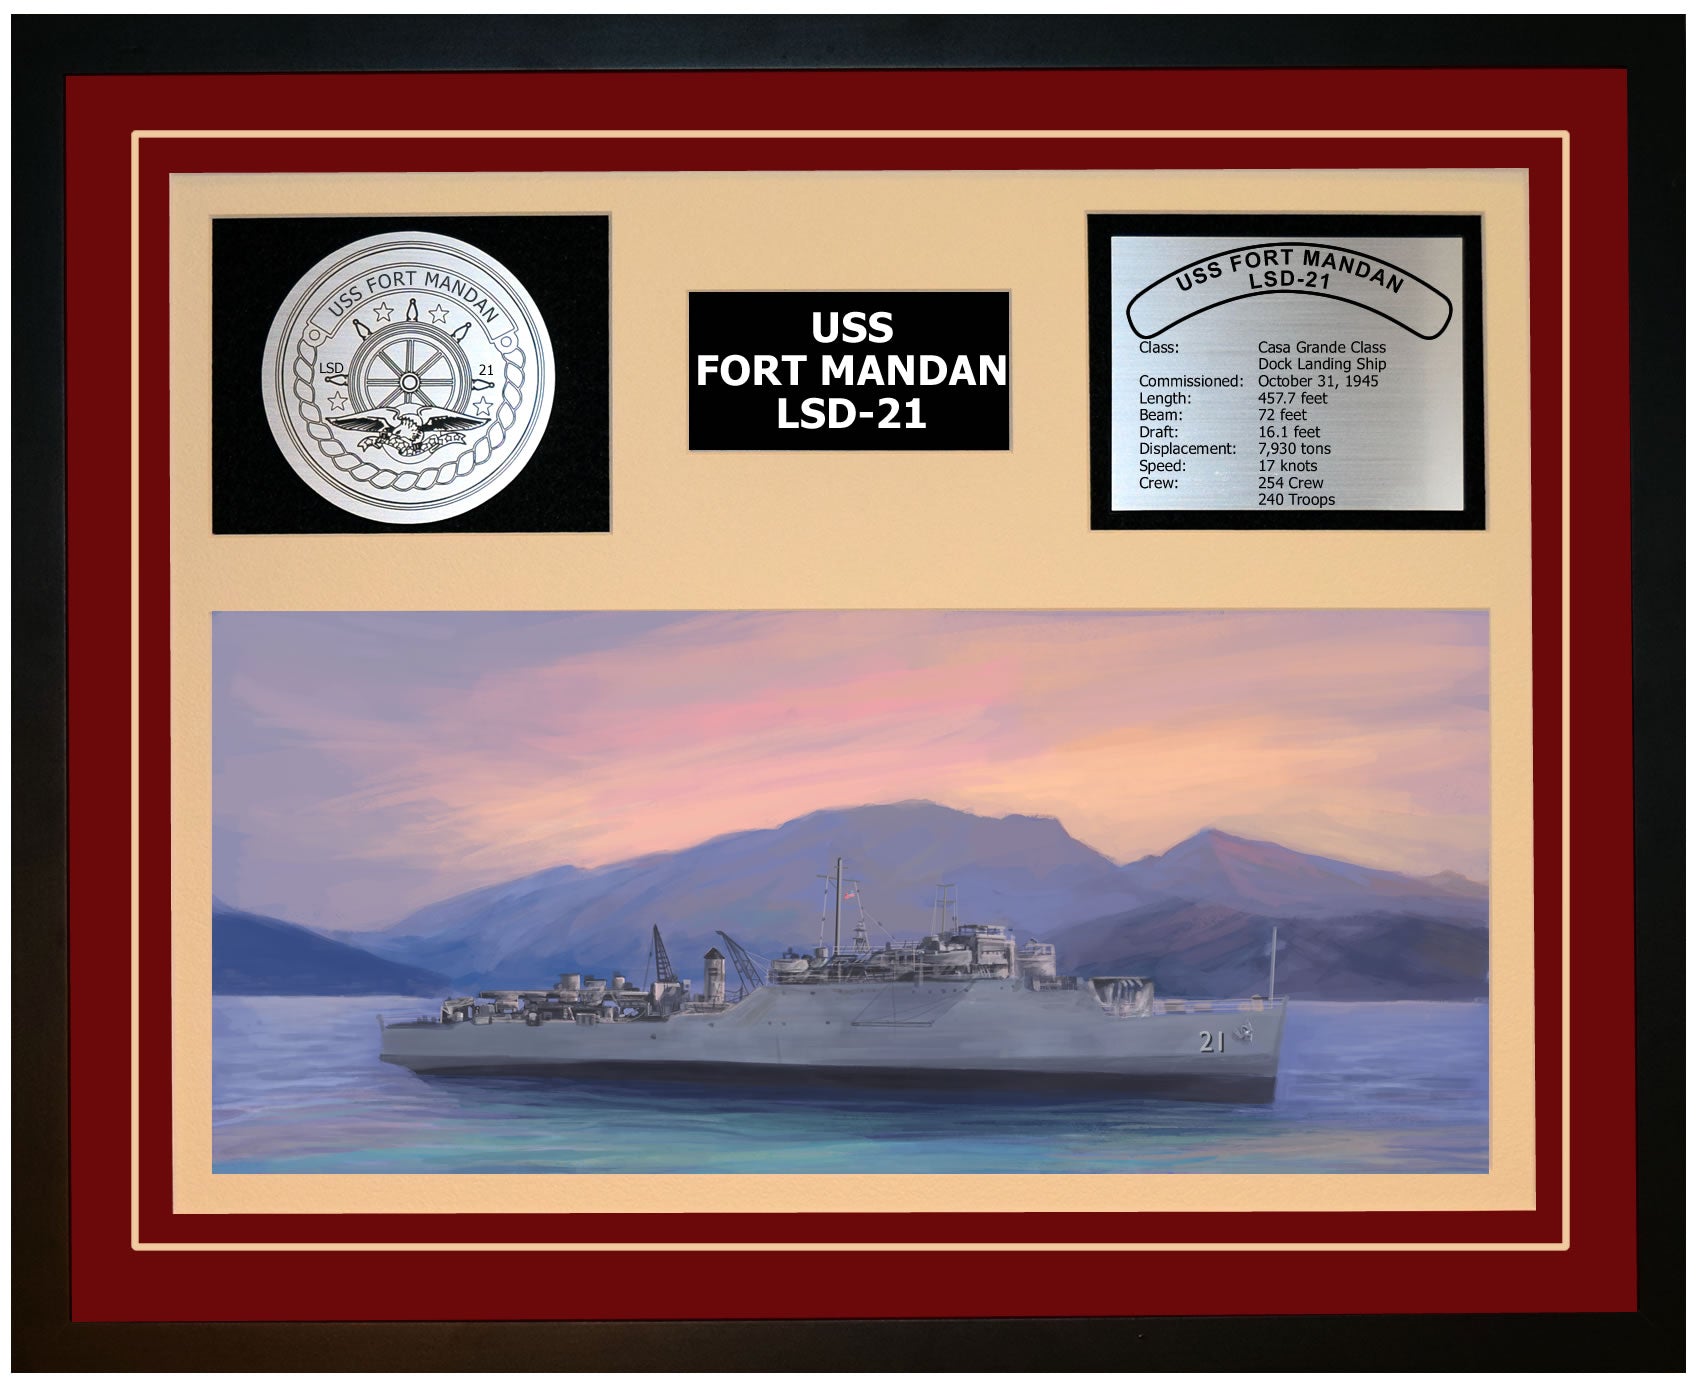 USS FORT MANDAN LSD-21 Framed Navy Ship Display Burgundy